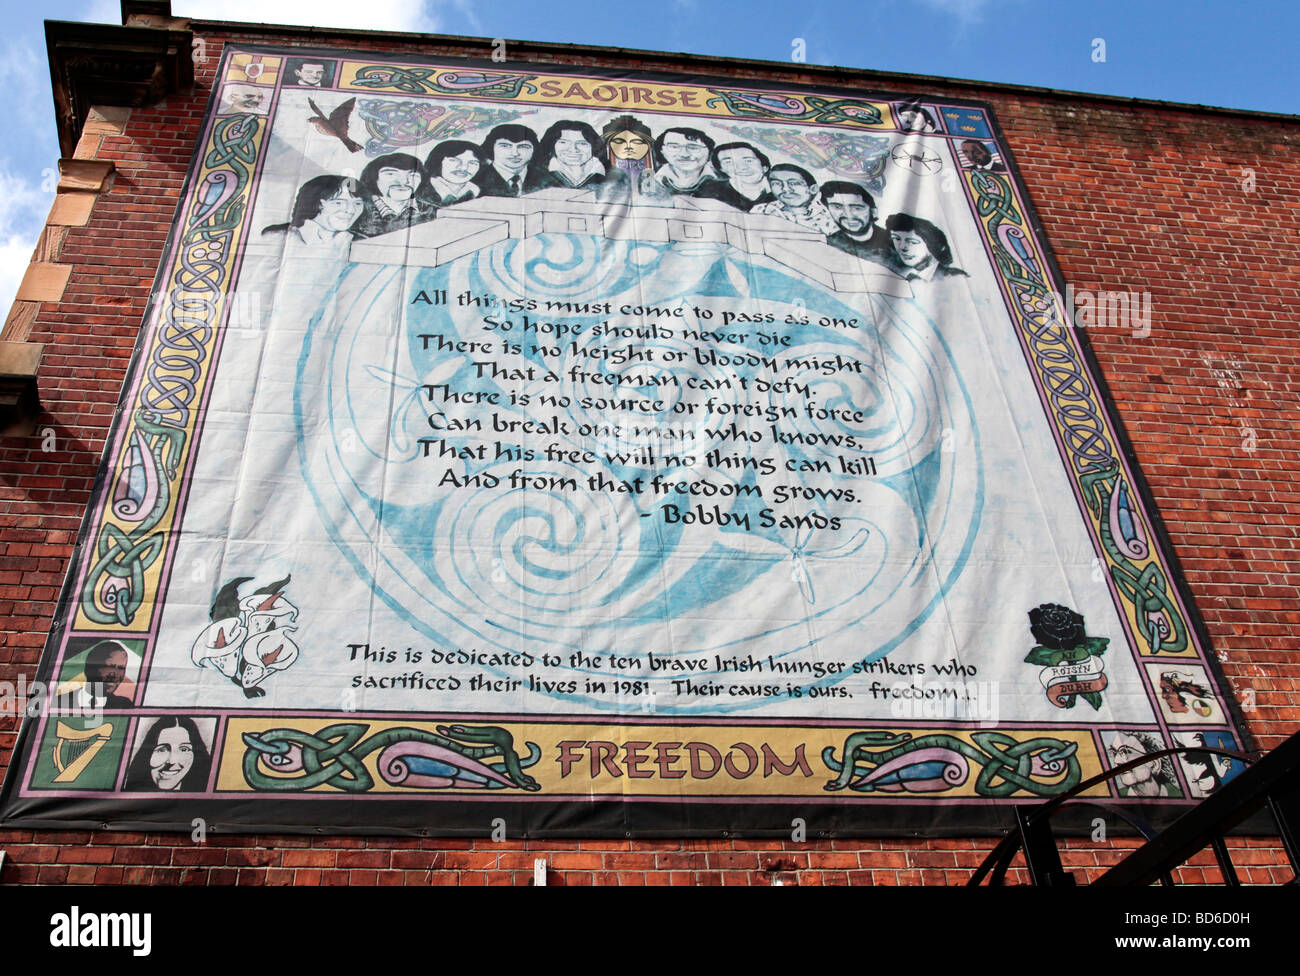 2001 fresque républicaine représentant dix grévistes de la faim, décédé en 1981, représenté ci-dessus un poème de Bobby Sands. Banque D'Images